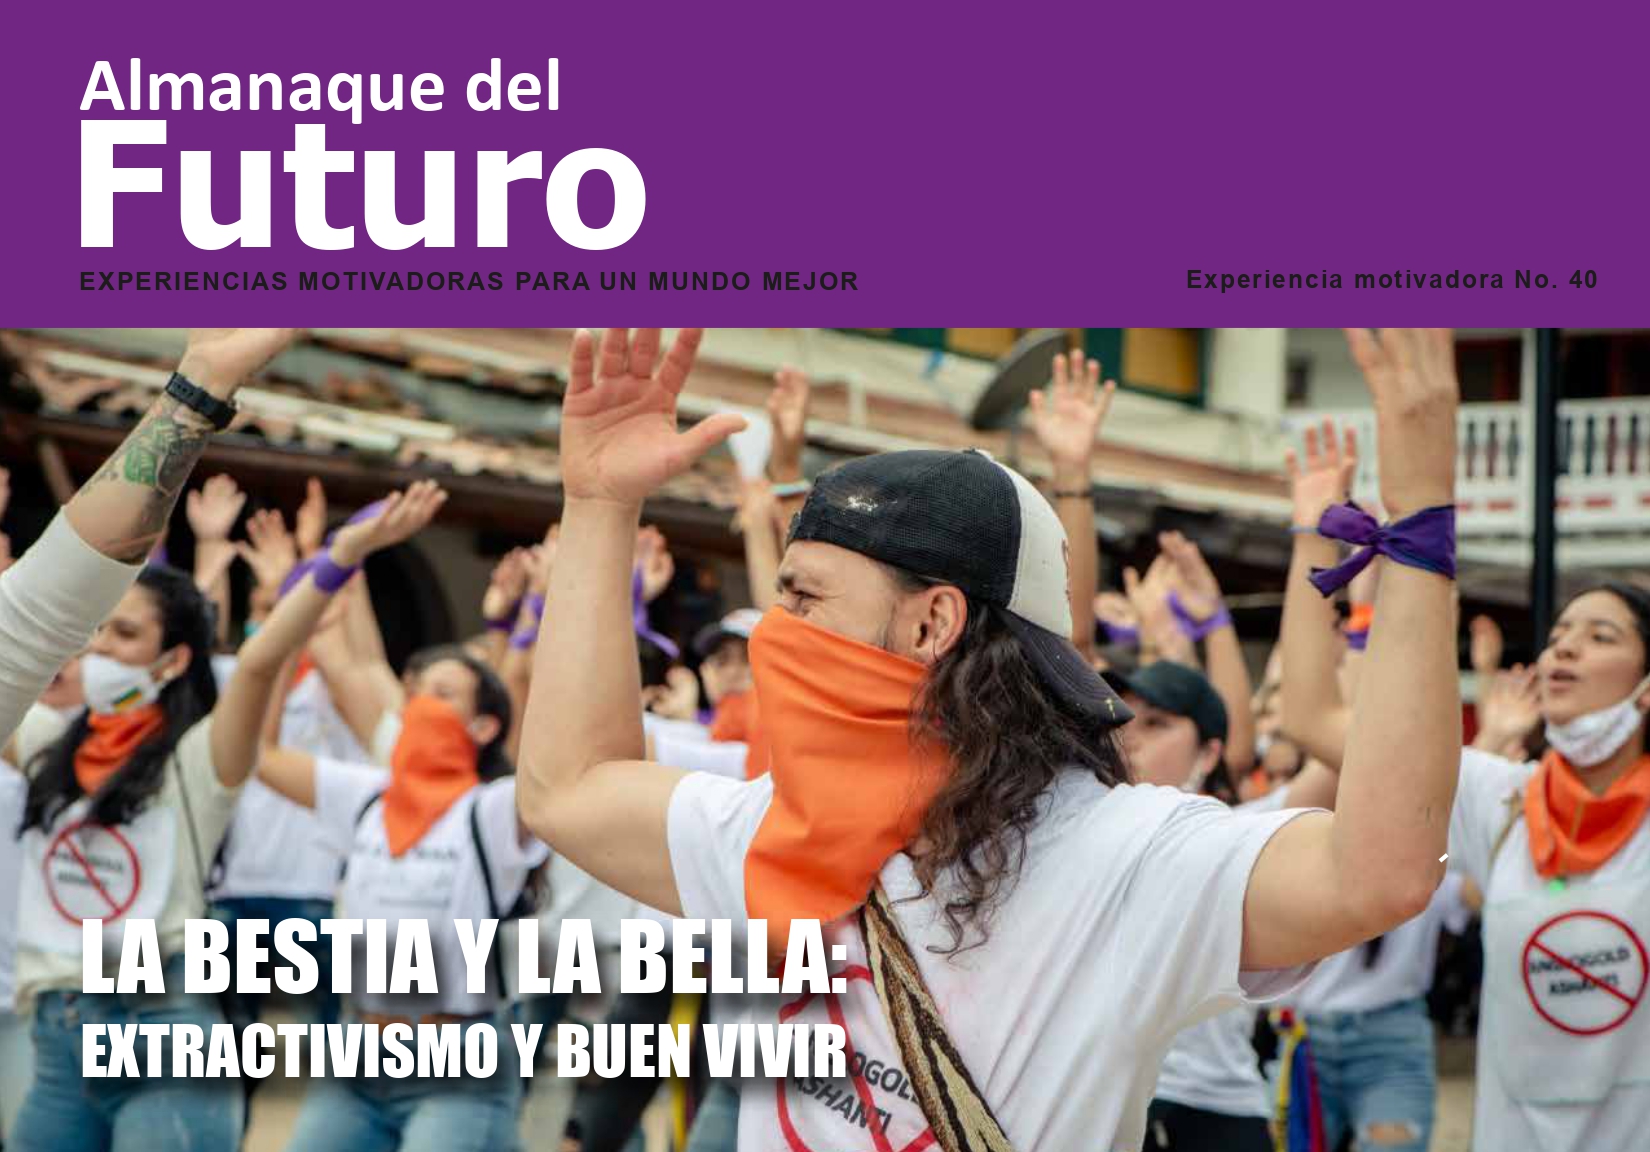 La Bestia y la Bella: Extractivismo y Buen Vivir